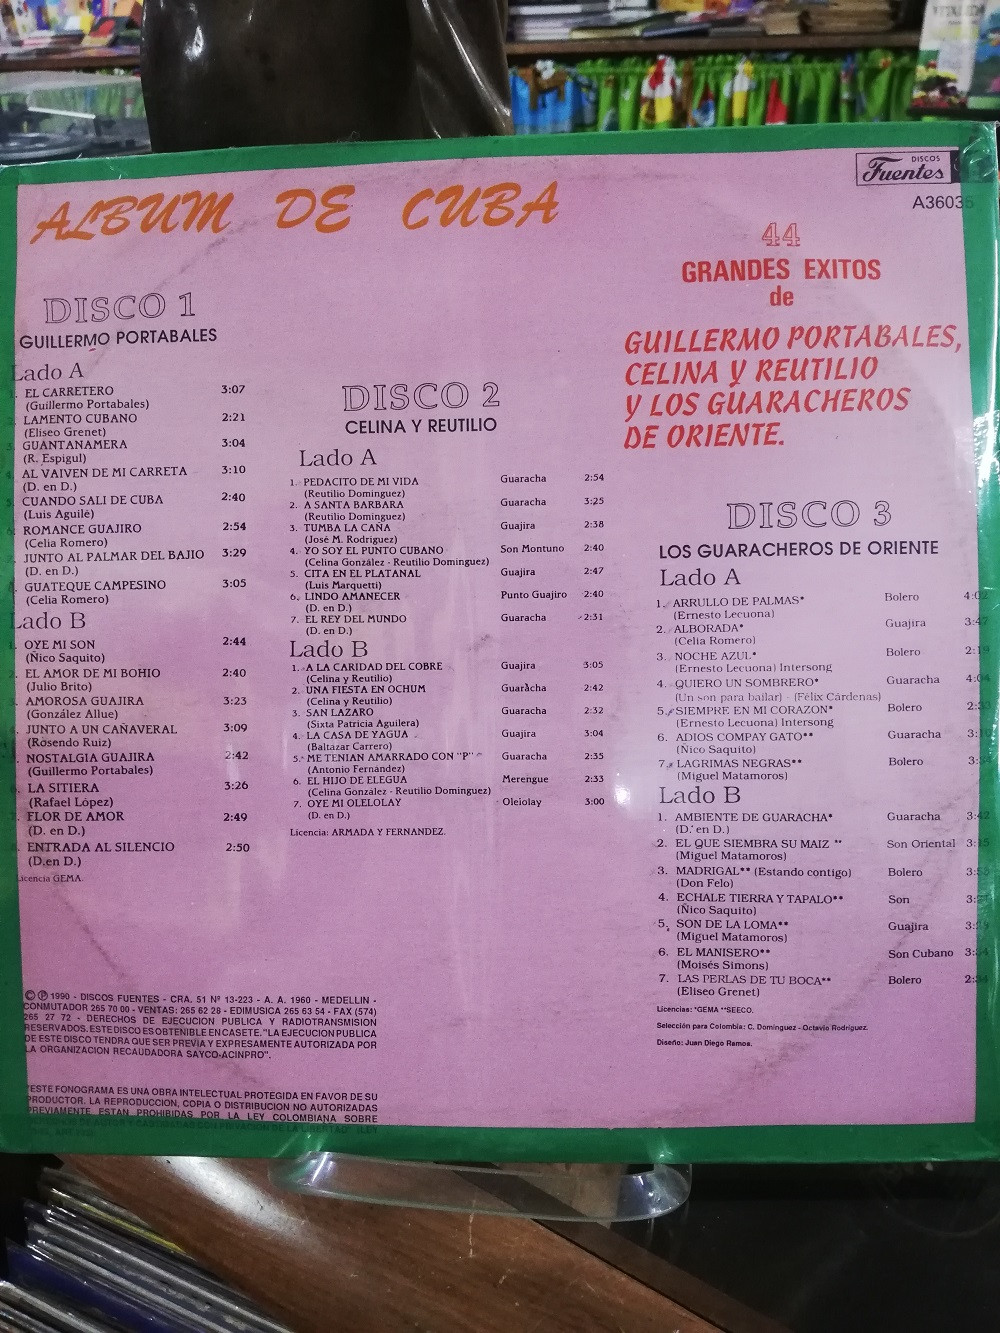 Imagen LP X 3 ALBUM DE CUBA - GUILLERMO PORTABALES/CELINA Y REUTILIO/GUARACHEROS DE ORIENTE 2